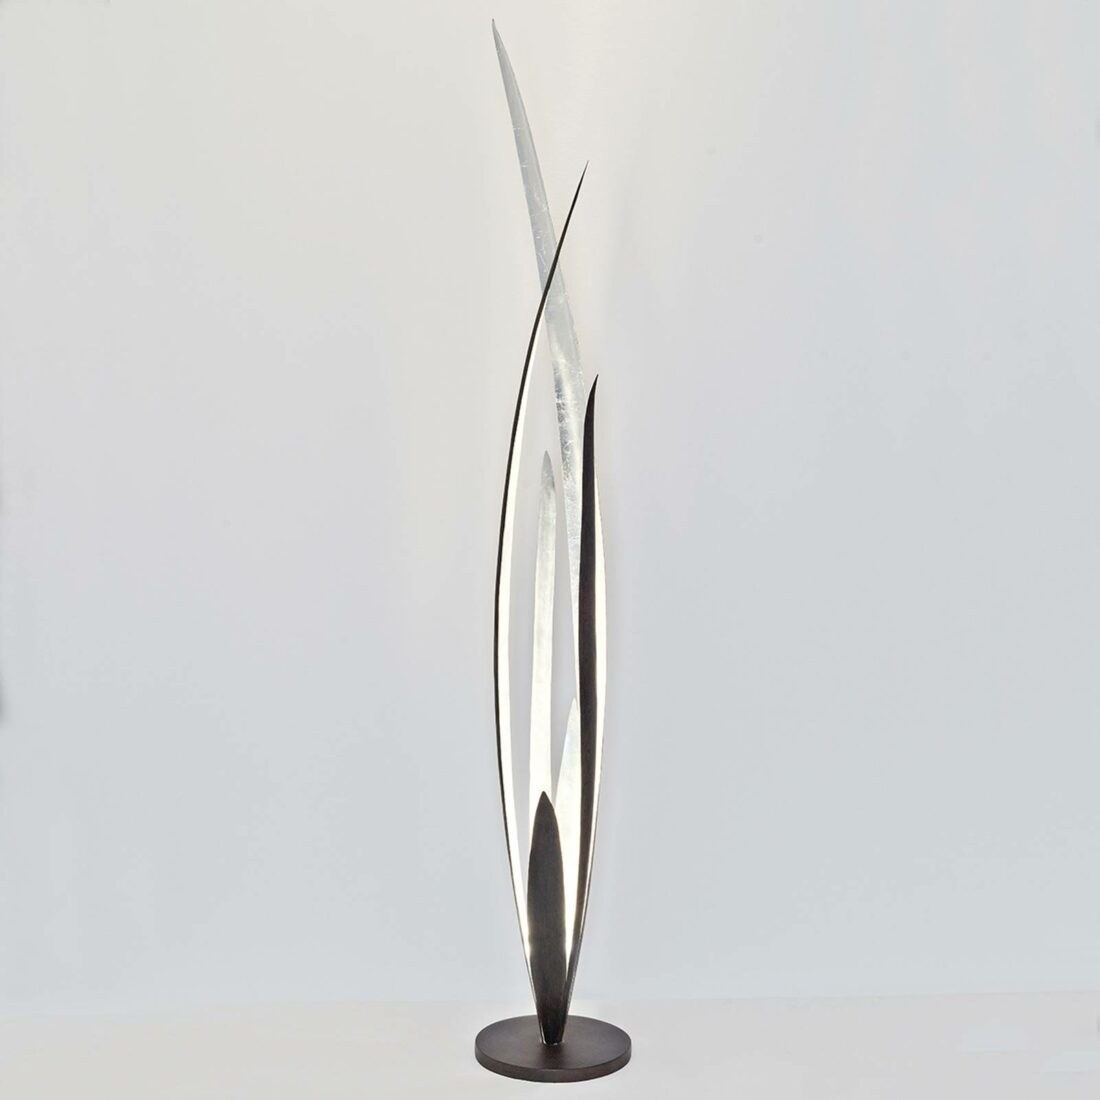 Holländer Palustre - černo-hnědo-stříbrná stojací lampa